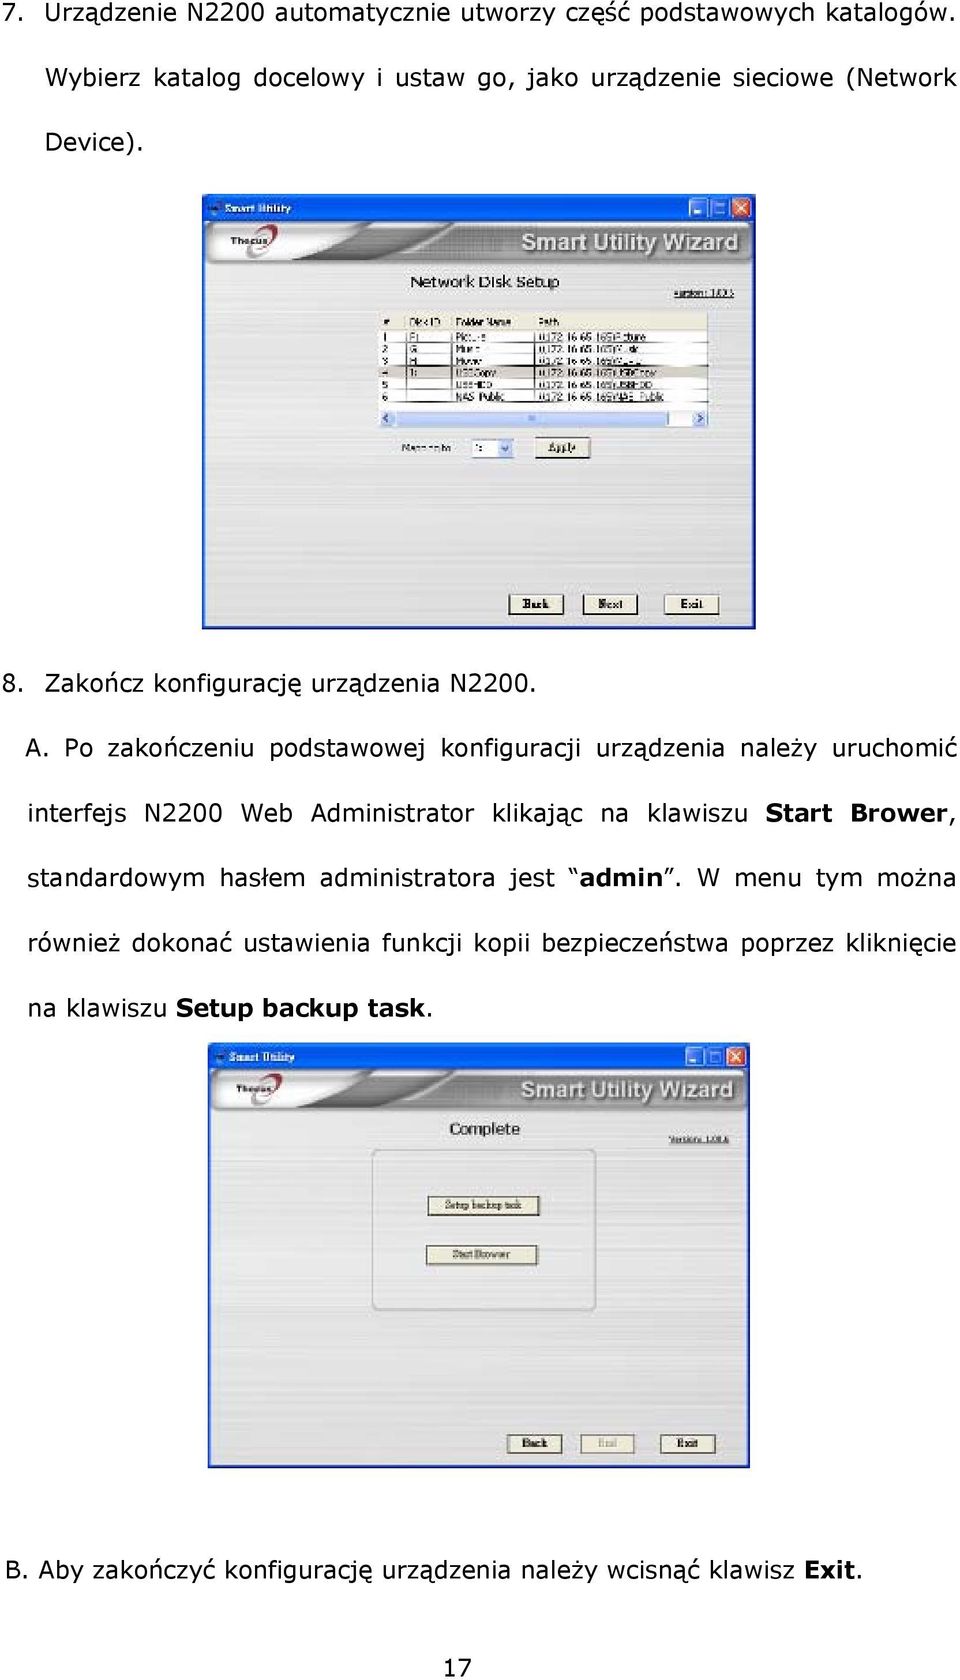 Po zakończeniu podstawowej konfiguracji urządzenia należy uruchomić interfejs N2200 Web Administrator klikając na klawiszu Start Brower,